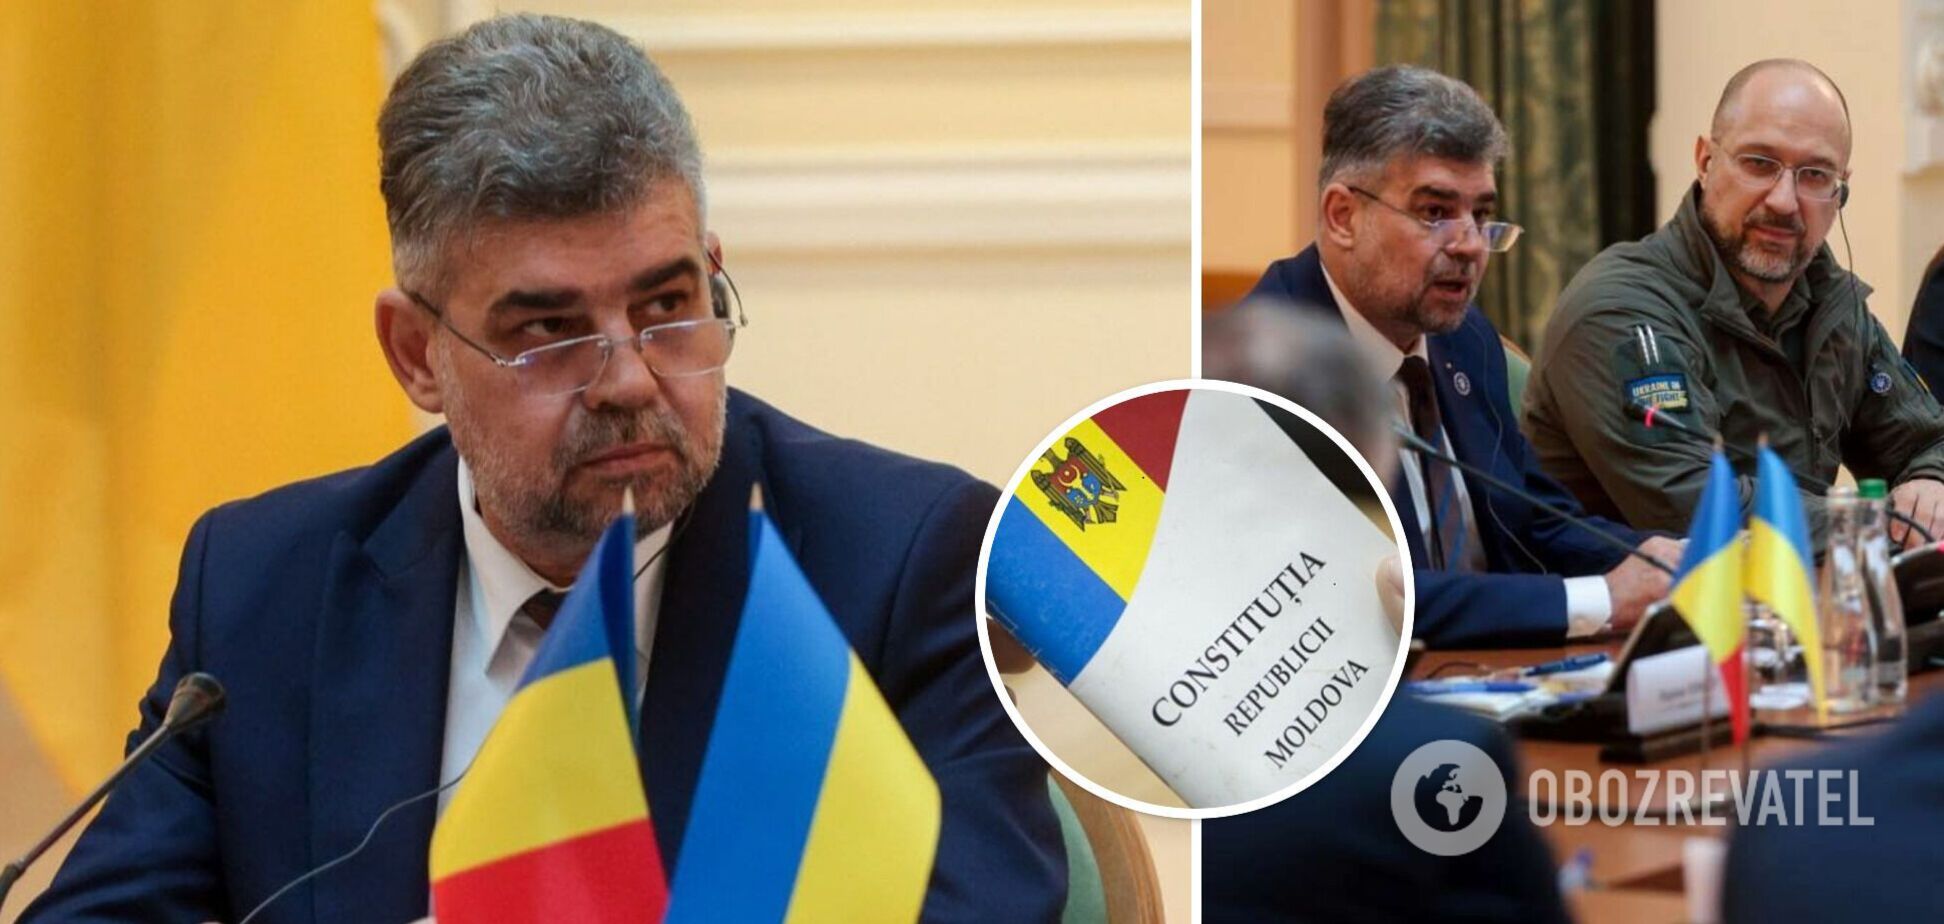 Скандалы в Украине работают на врага: два примера